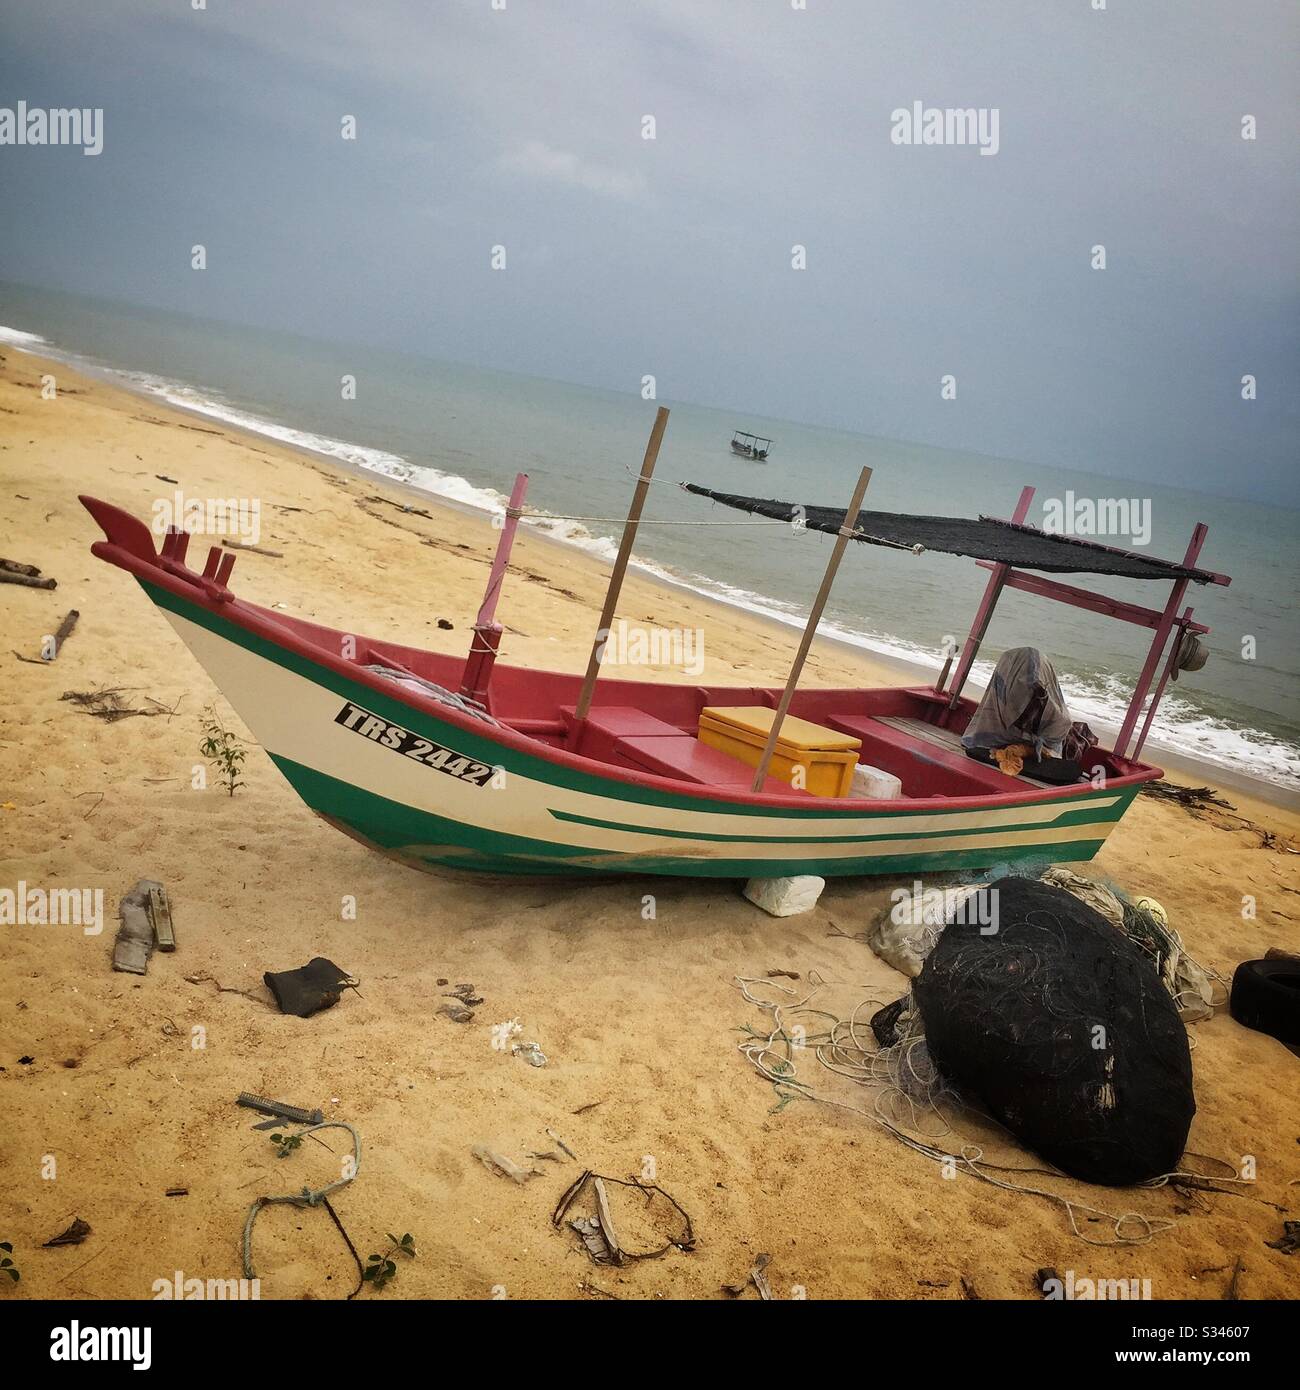 A traditional fishing boat and nets on the beach, Batu Rakit, Terengganu,  Malaysia Stock Photo - Alamy